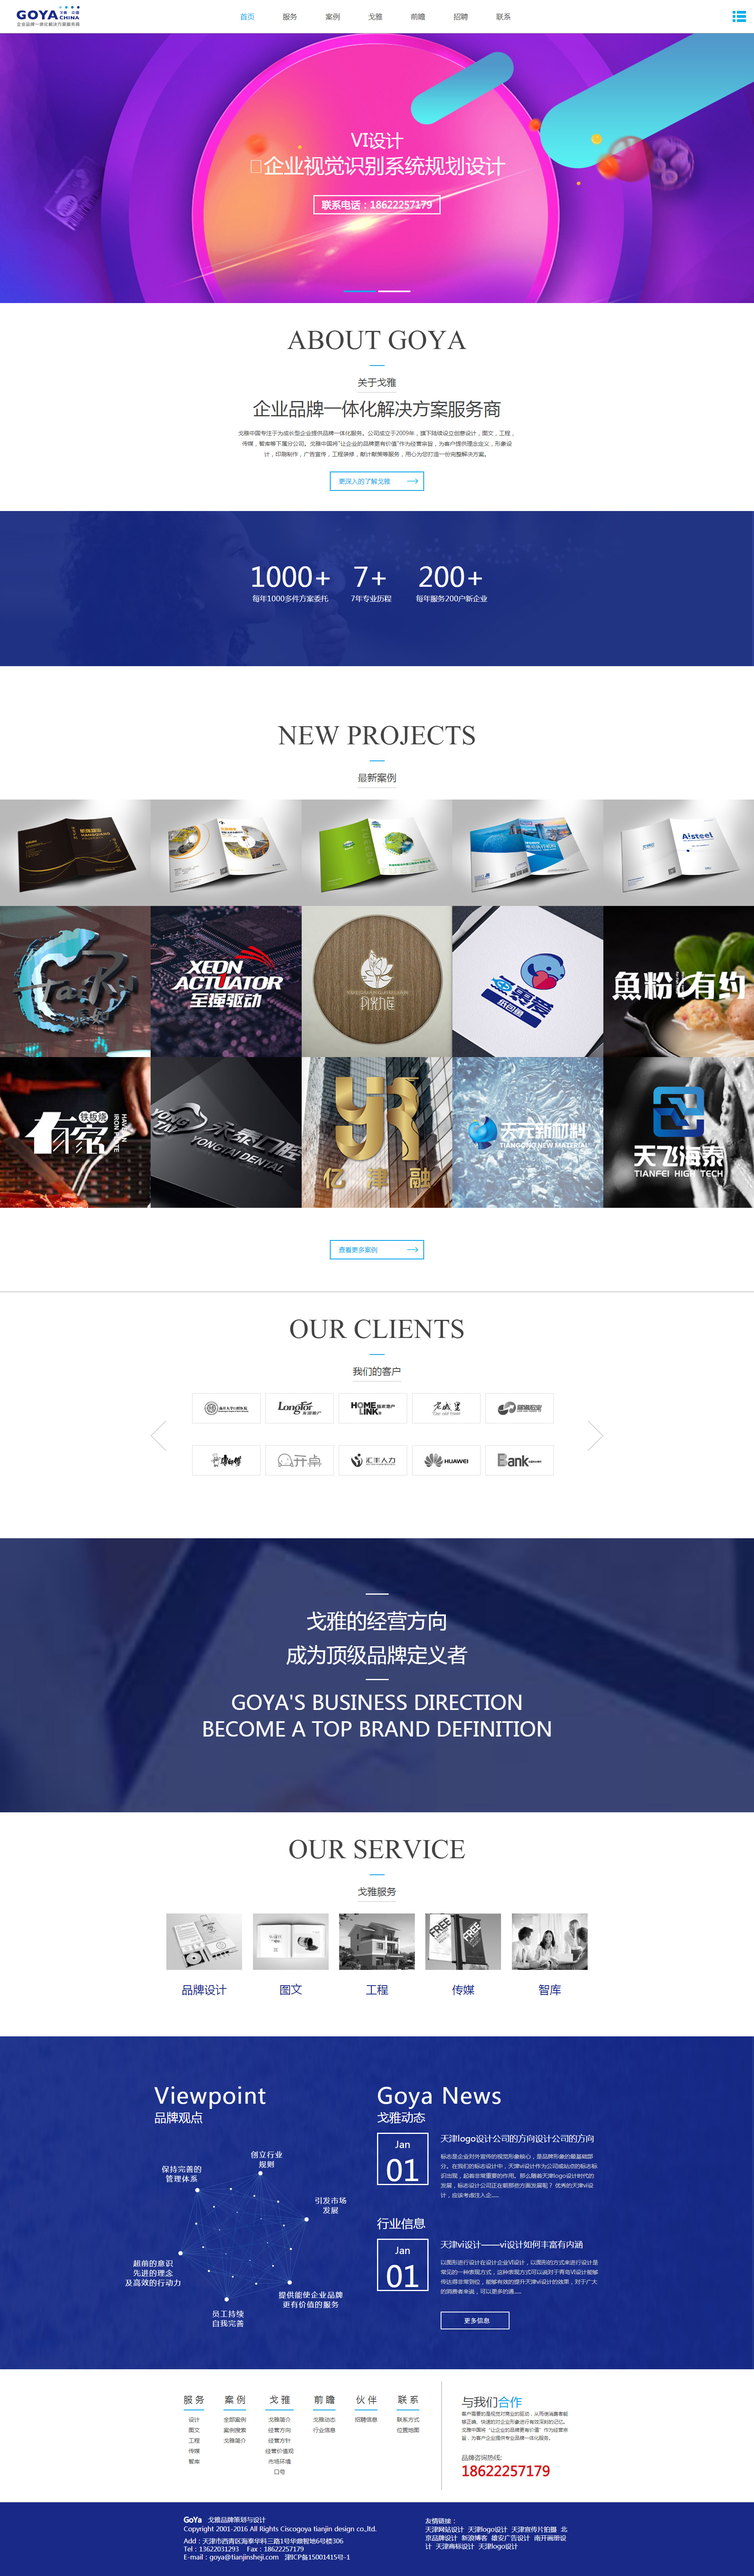 西斯科戈雅企业形象设计网站设计效果图